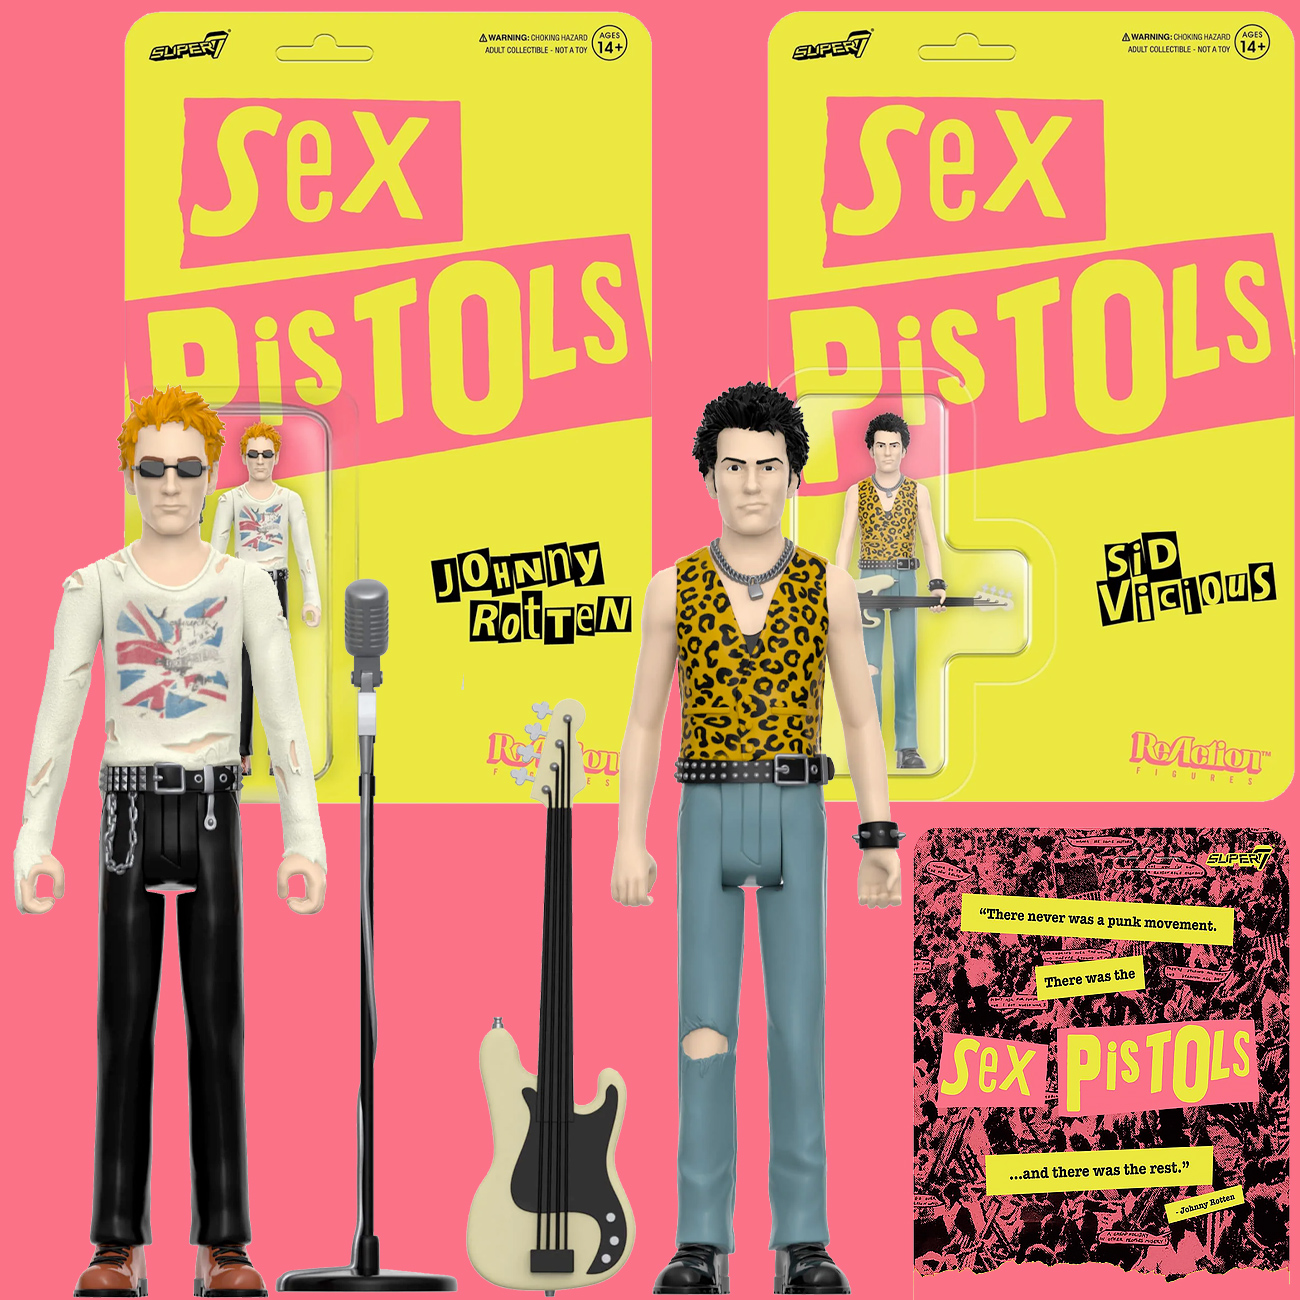 Sex Pistols ReAction Punk Rock Action Figures